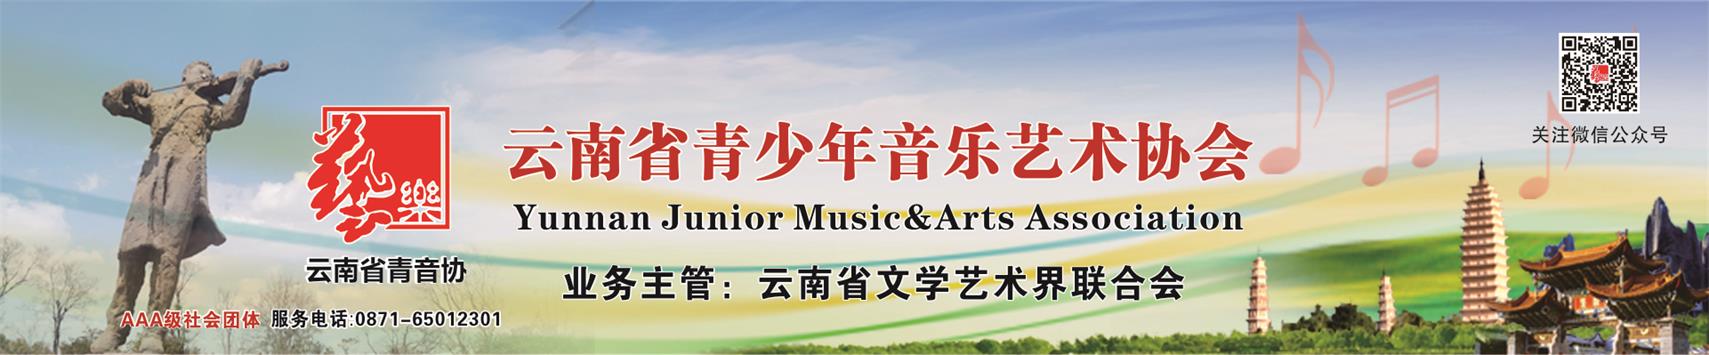 云南省青少年音乐艺术协会